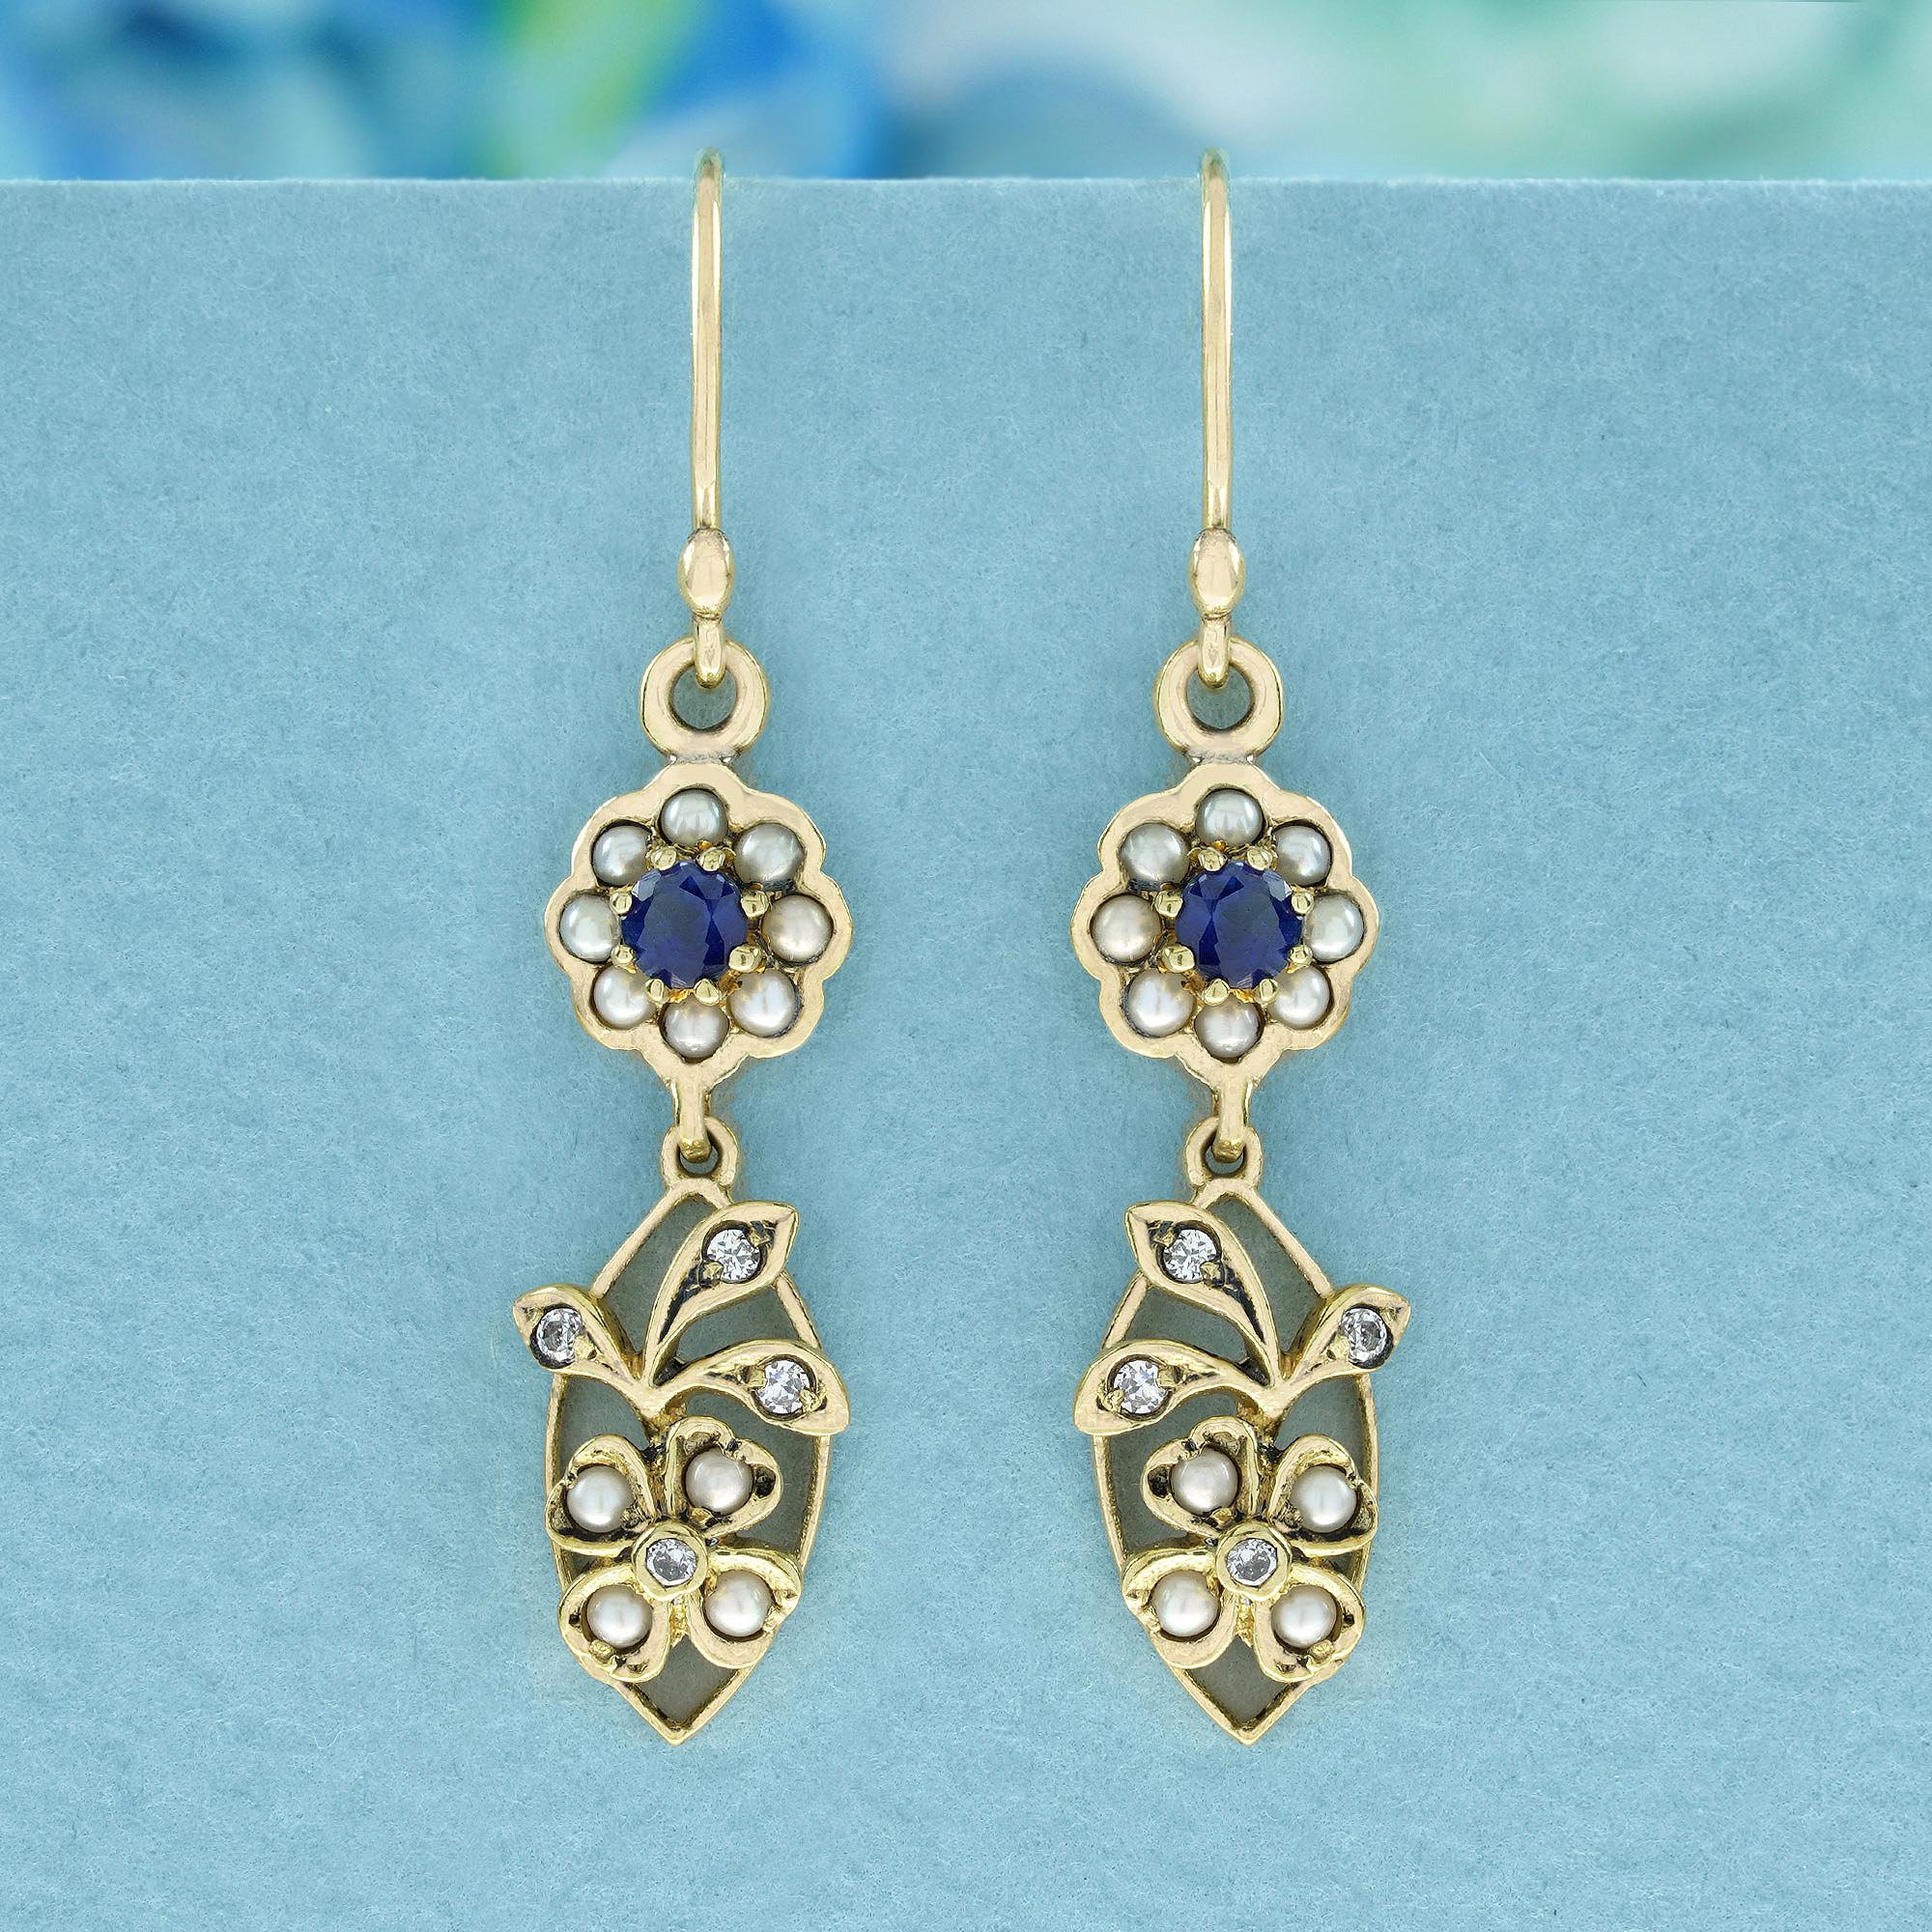 Die Gelbgold-Ohrringe im Vintage-Stil sind mit einem floralen Cluster-Design versehen. Jeder Ohrring besteht aus mehreren glänzenden, runden, weißen Perlen und einem runden, facettierten blauen Saphir in der Mitte. Die untere Reihe besteht aus